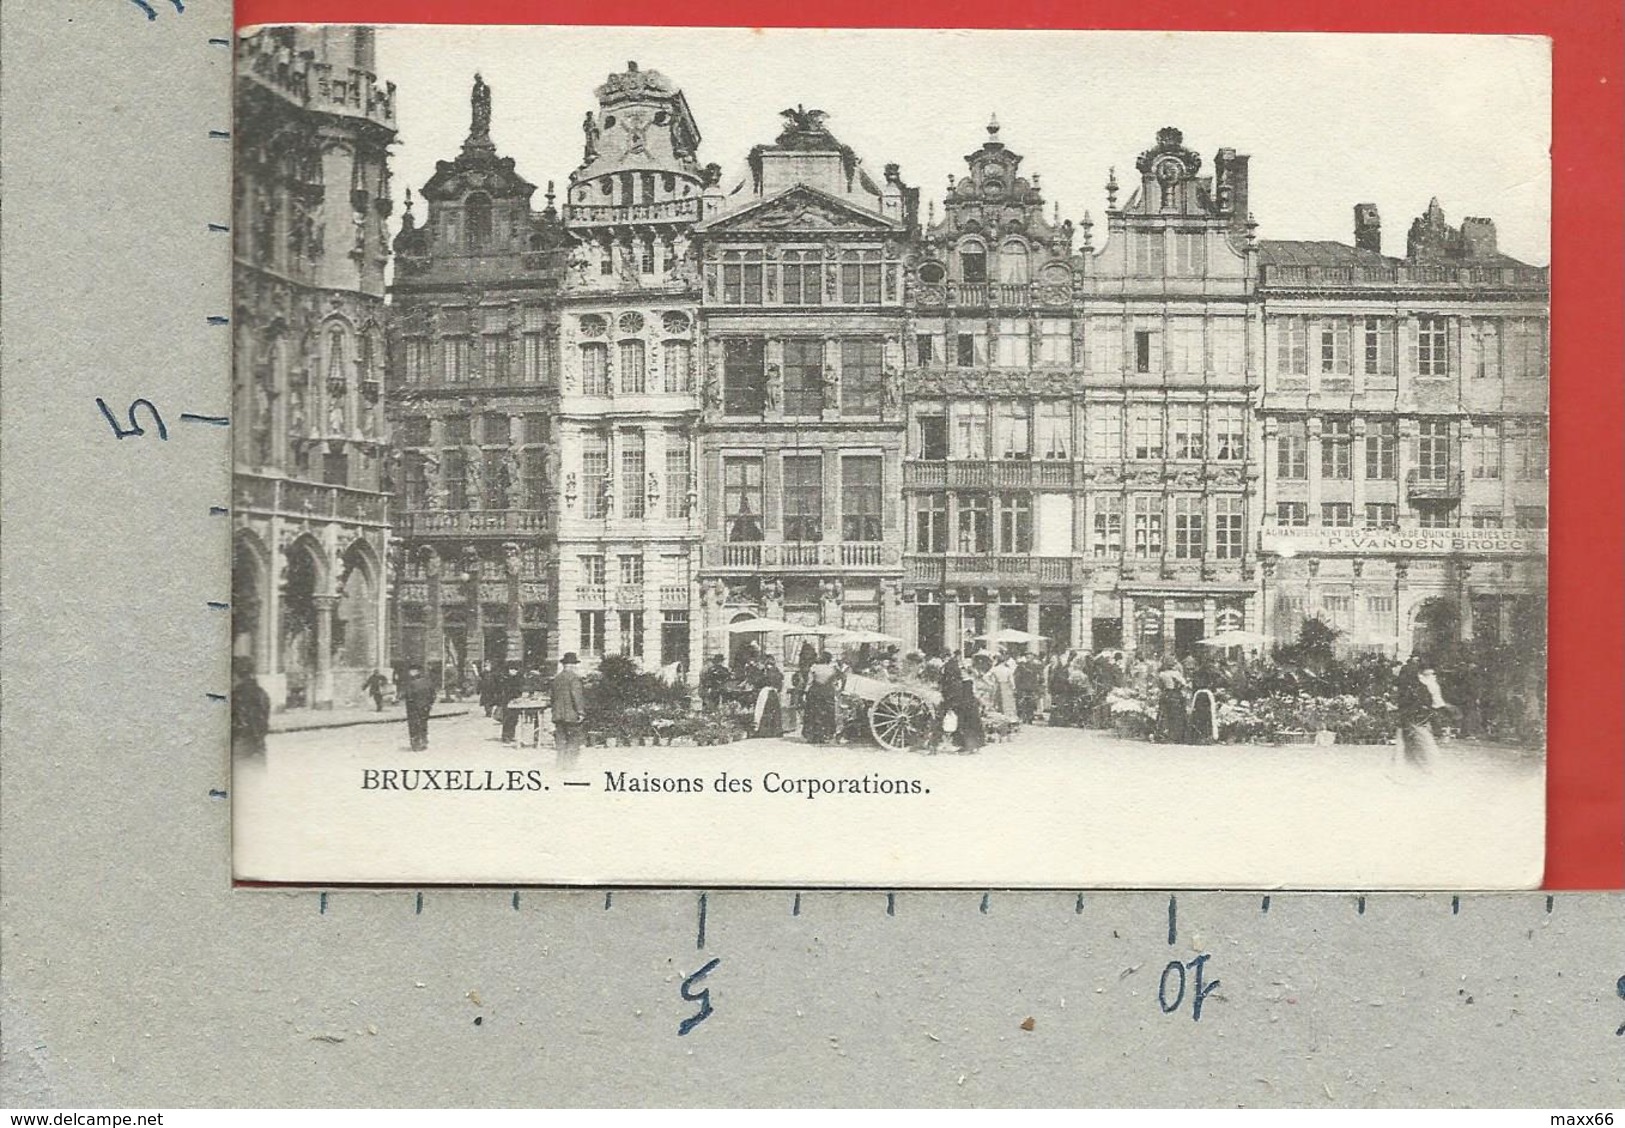 CARTOLINA VG BELGIO - BRUXELLES - Maisons Des Corporations - 9 X 14 - 1908 - Monumenti, Edifici